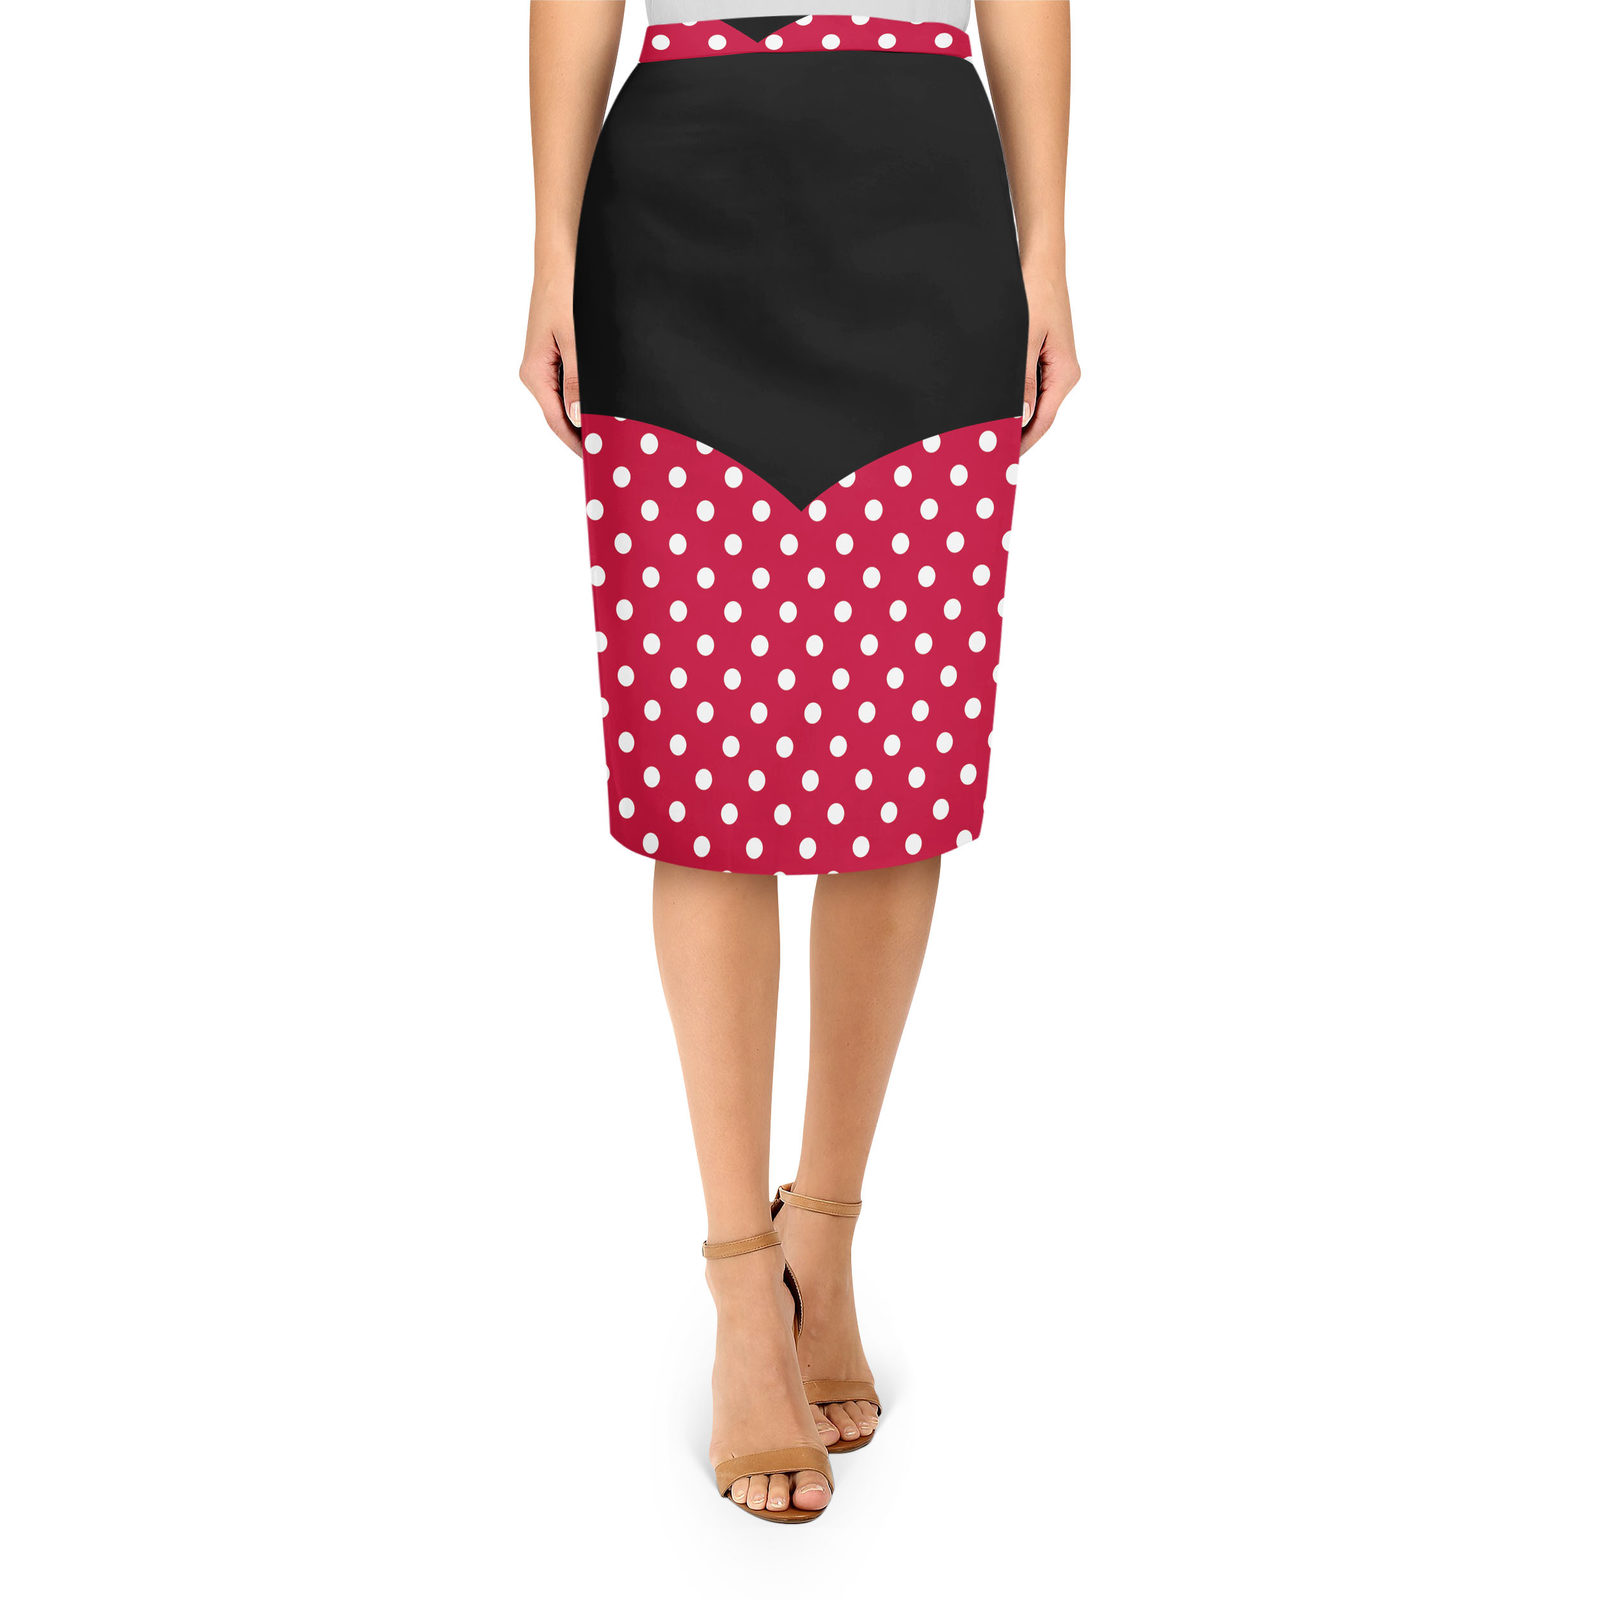 Minnie Rock The Dots Disney Inspired Midi Pencil Skirt - Skirts